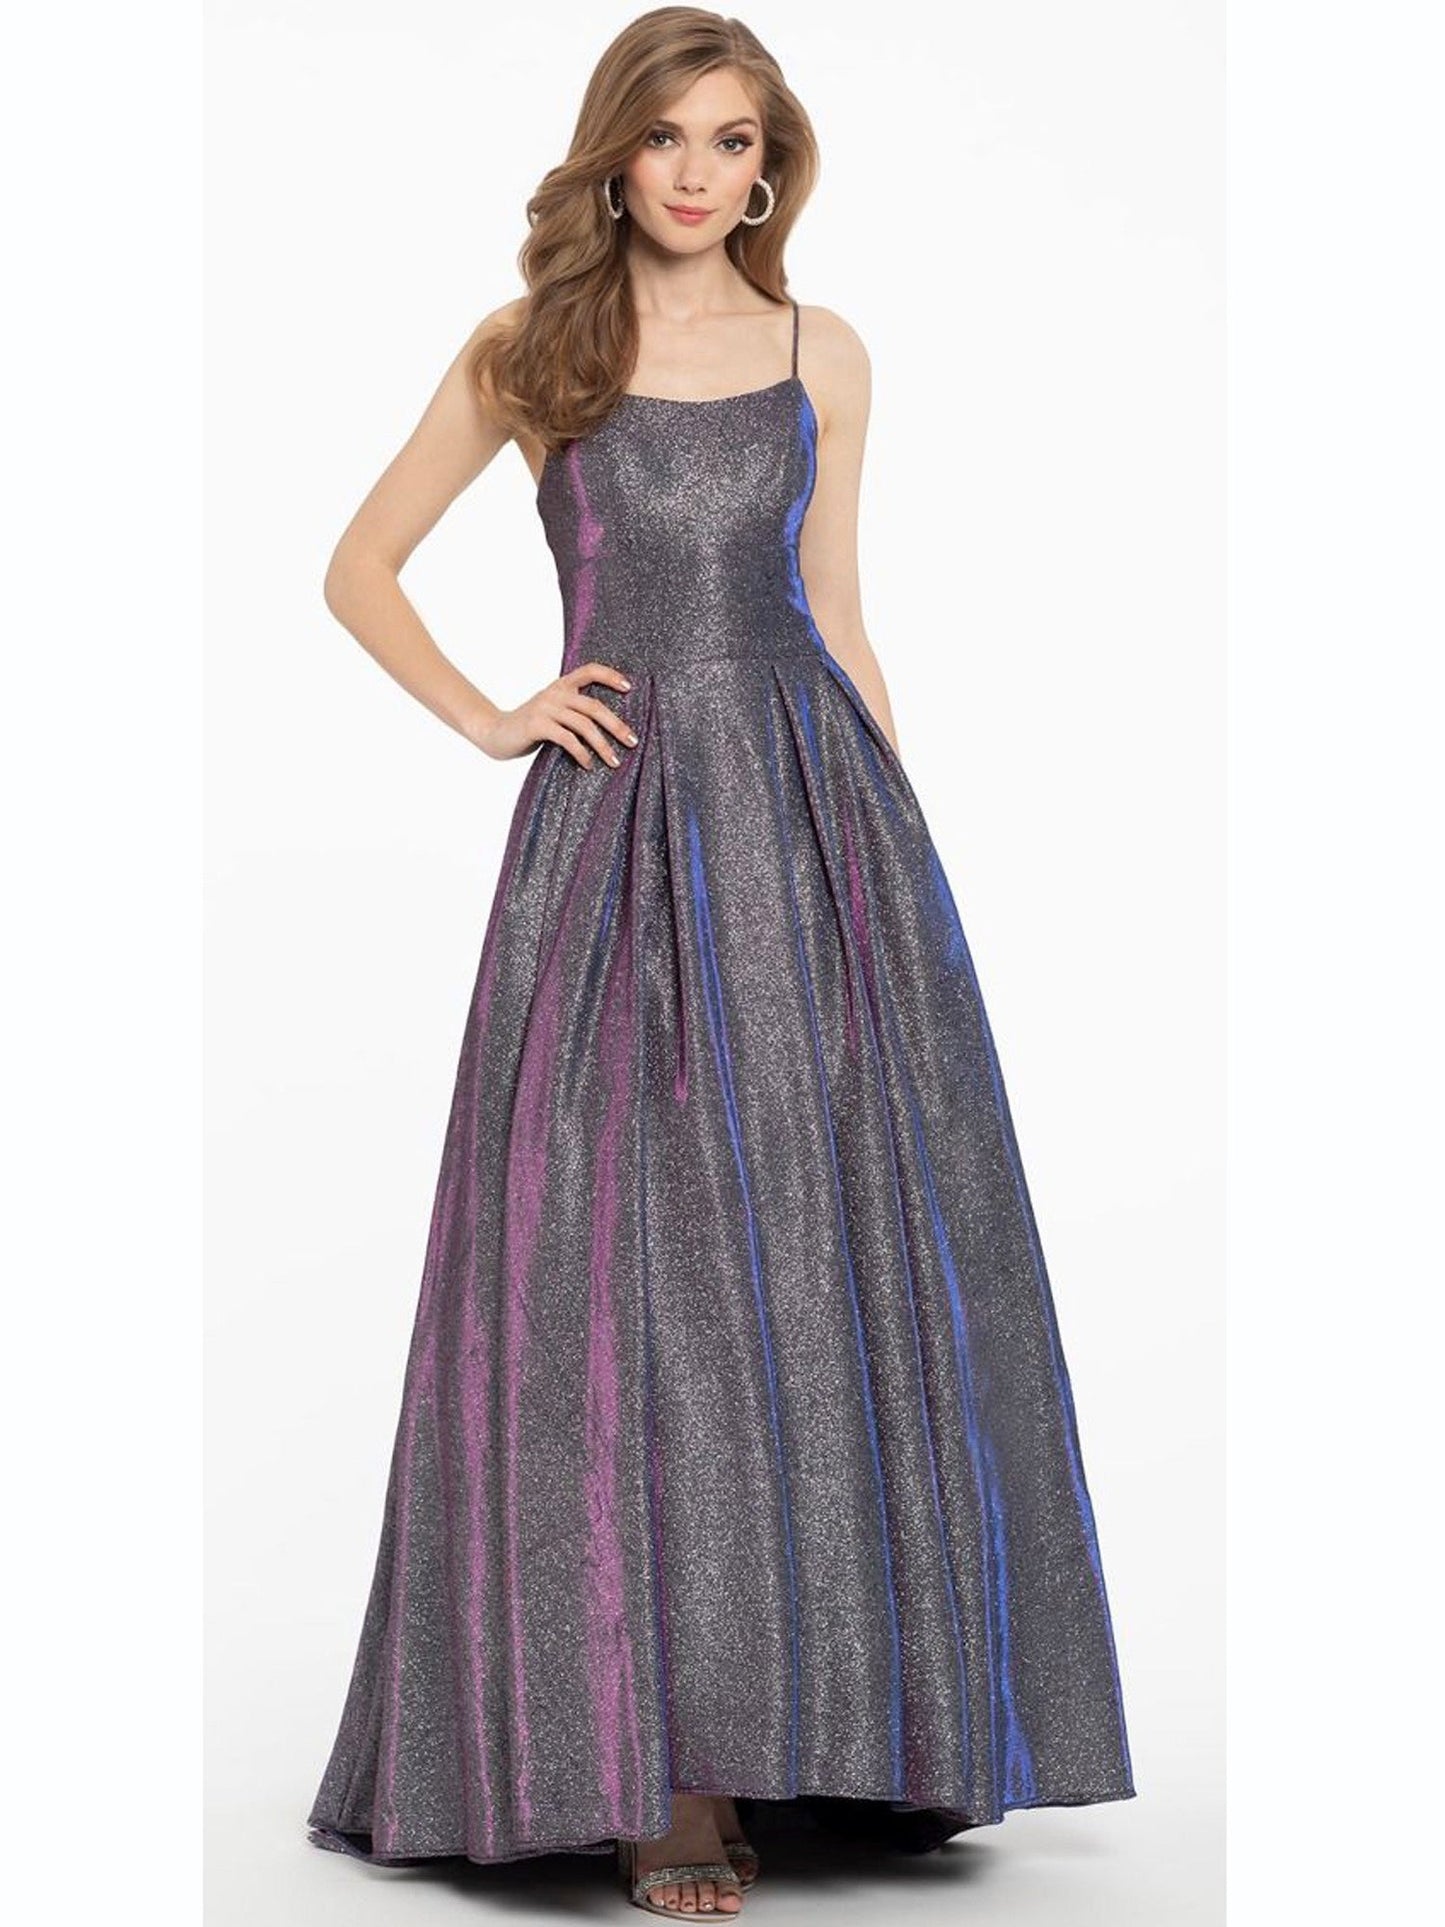 Glitter Spaghetti Straps Sleeveless Dress